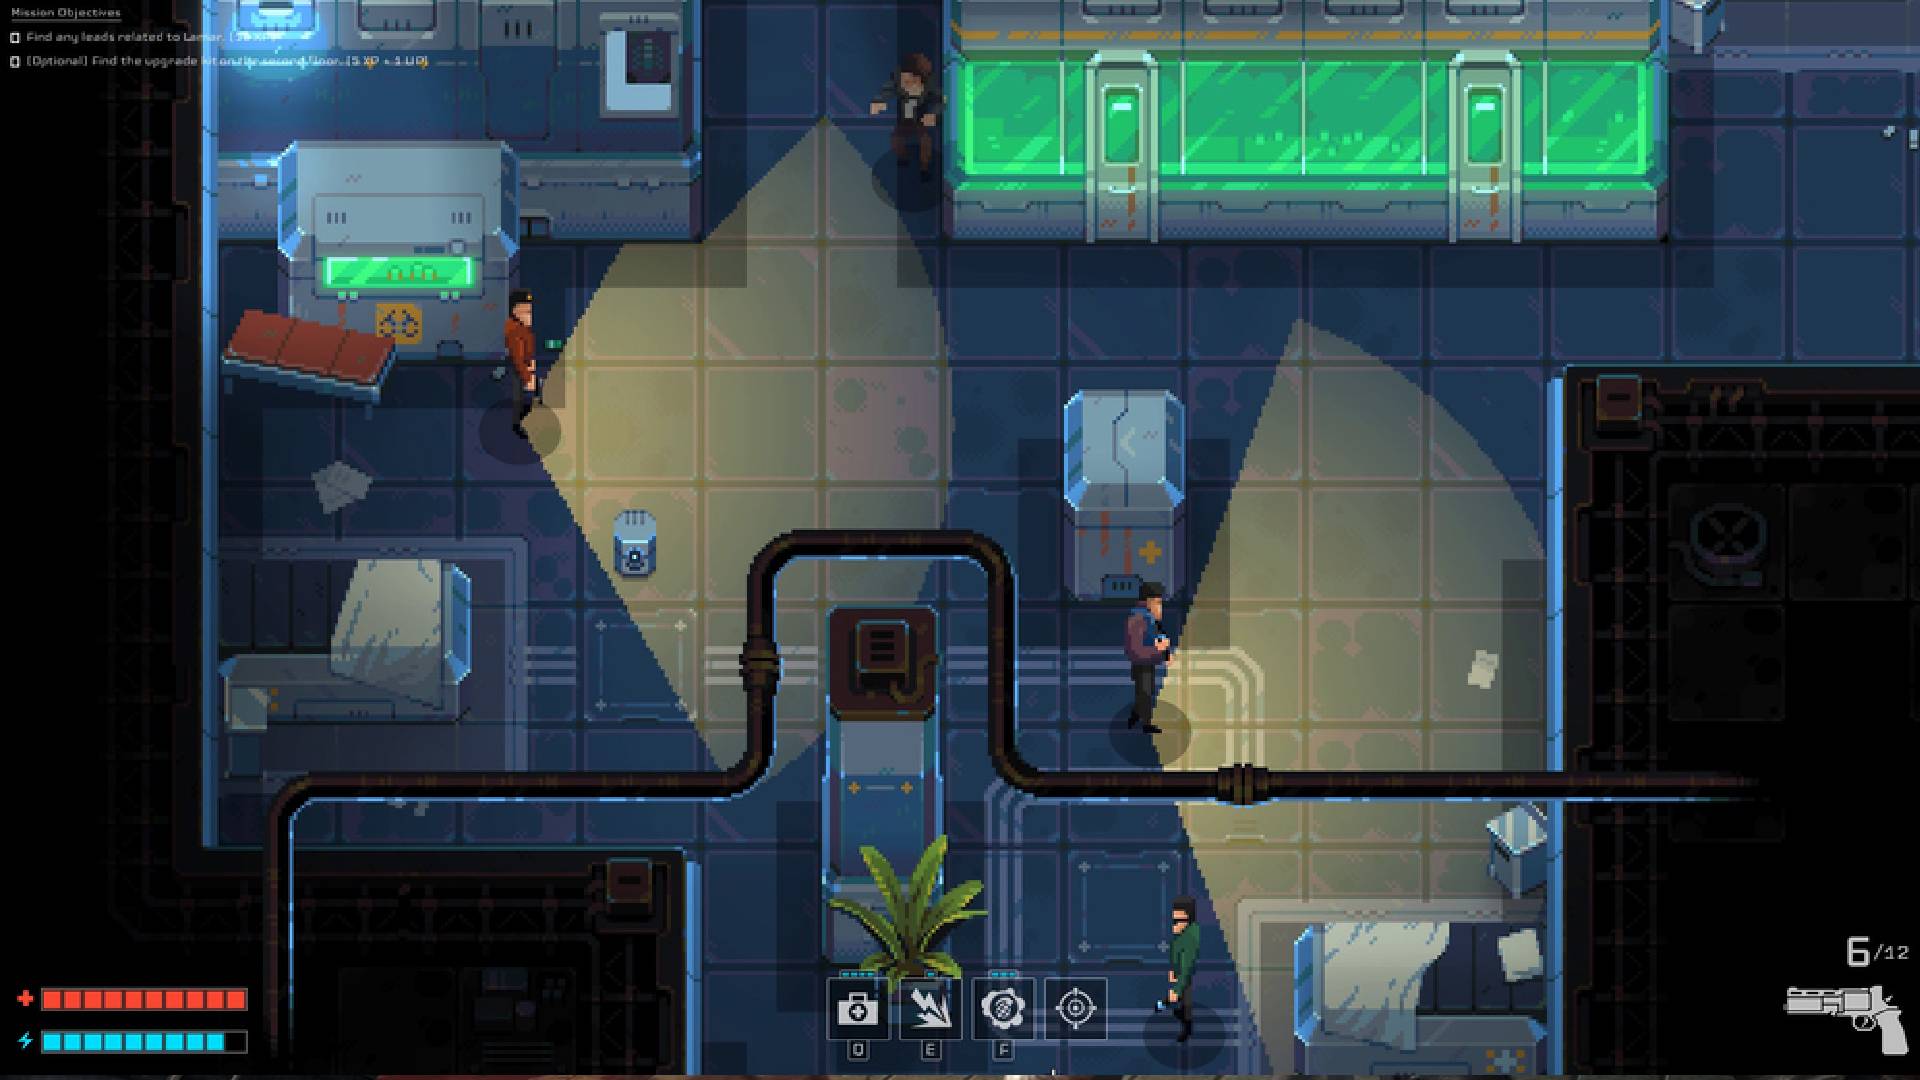 melhores jogos de espionagem: uma cena pixelizada de cima para baixo mostra uma série de alarmes e personagens tentando passar por eles